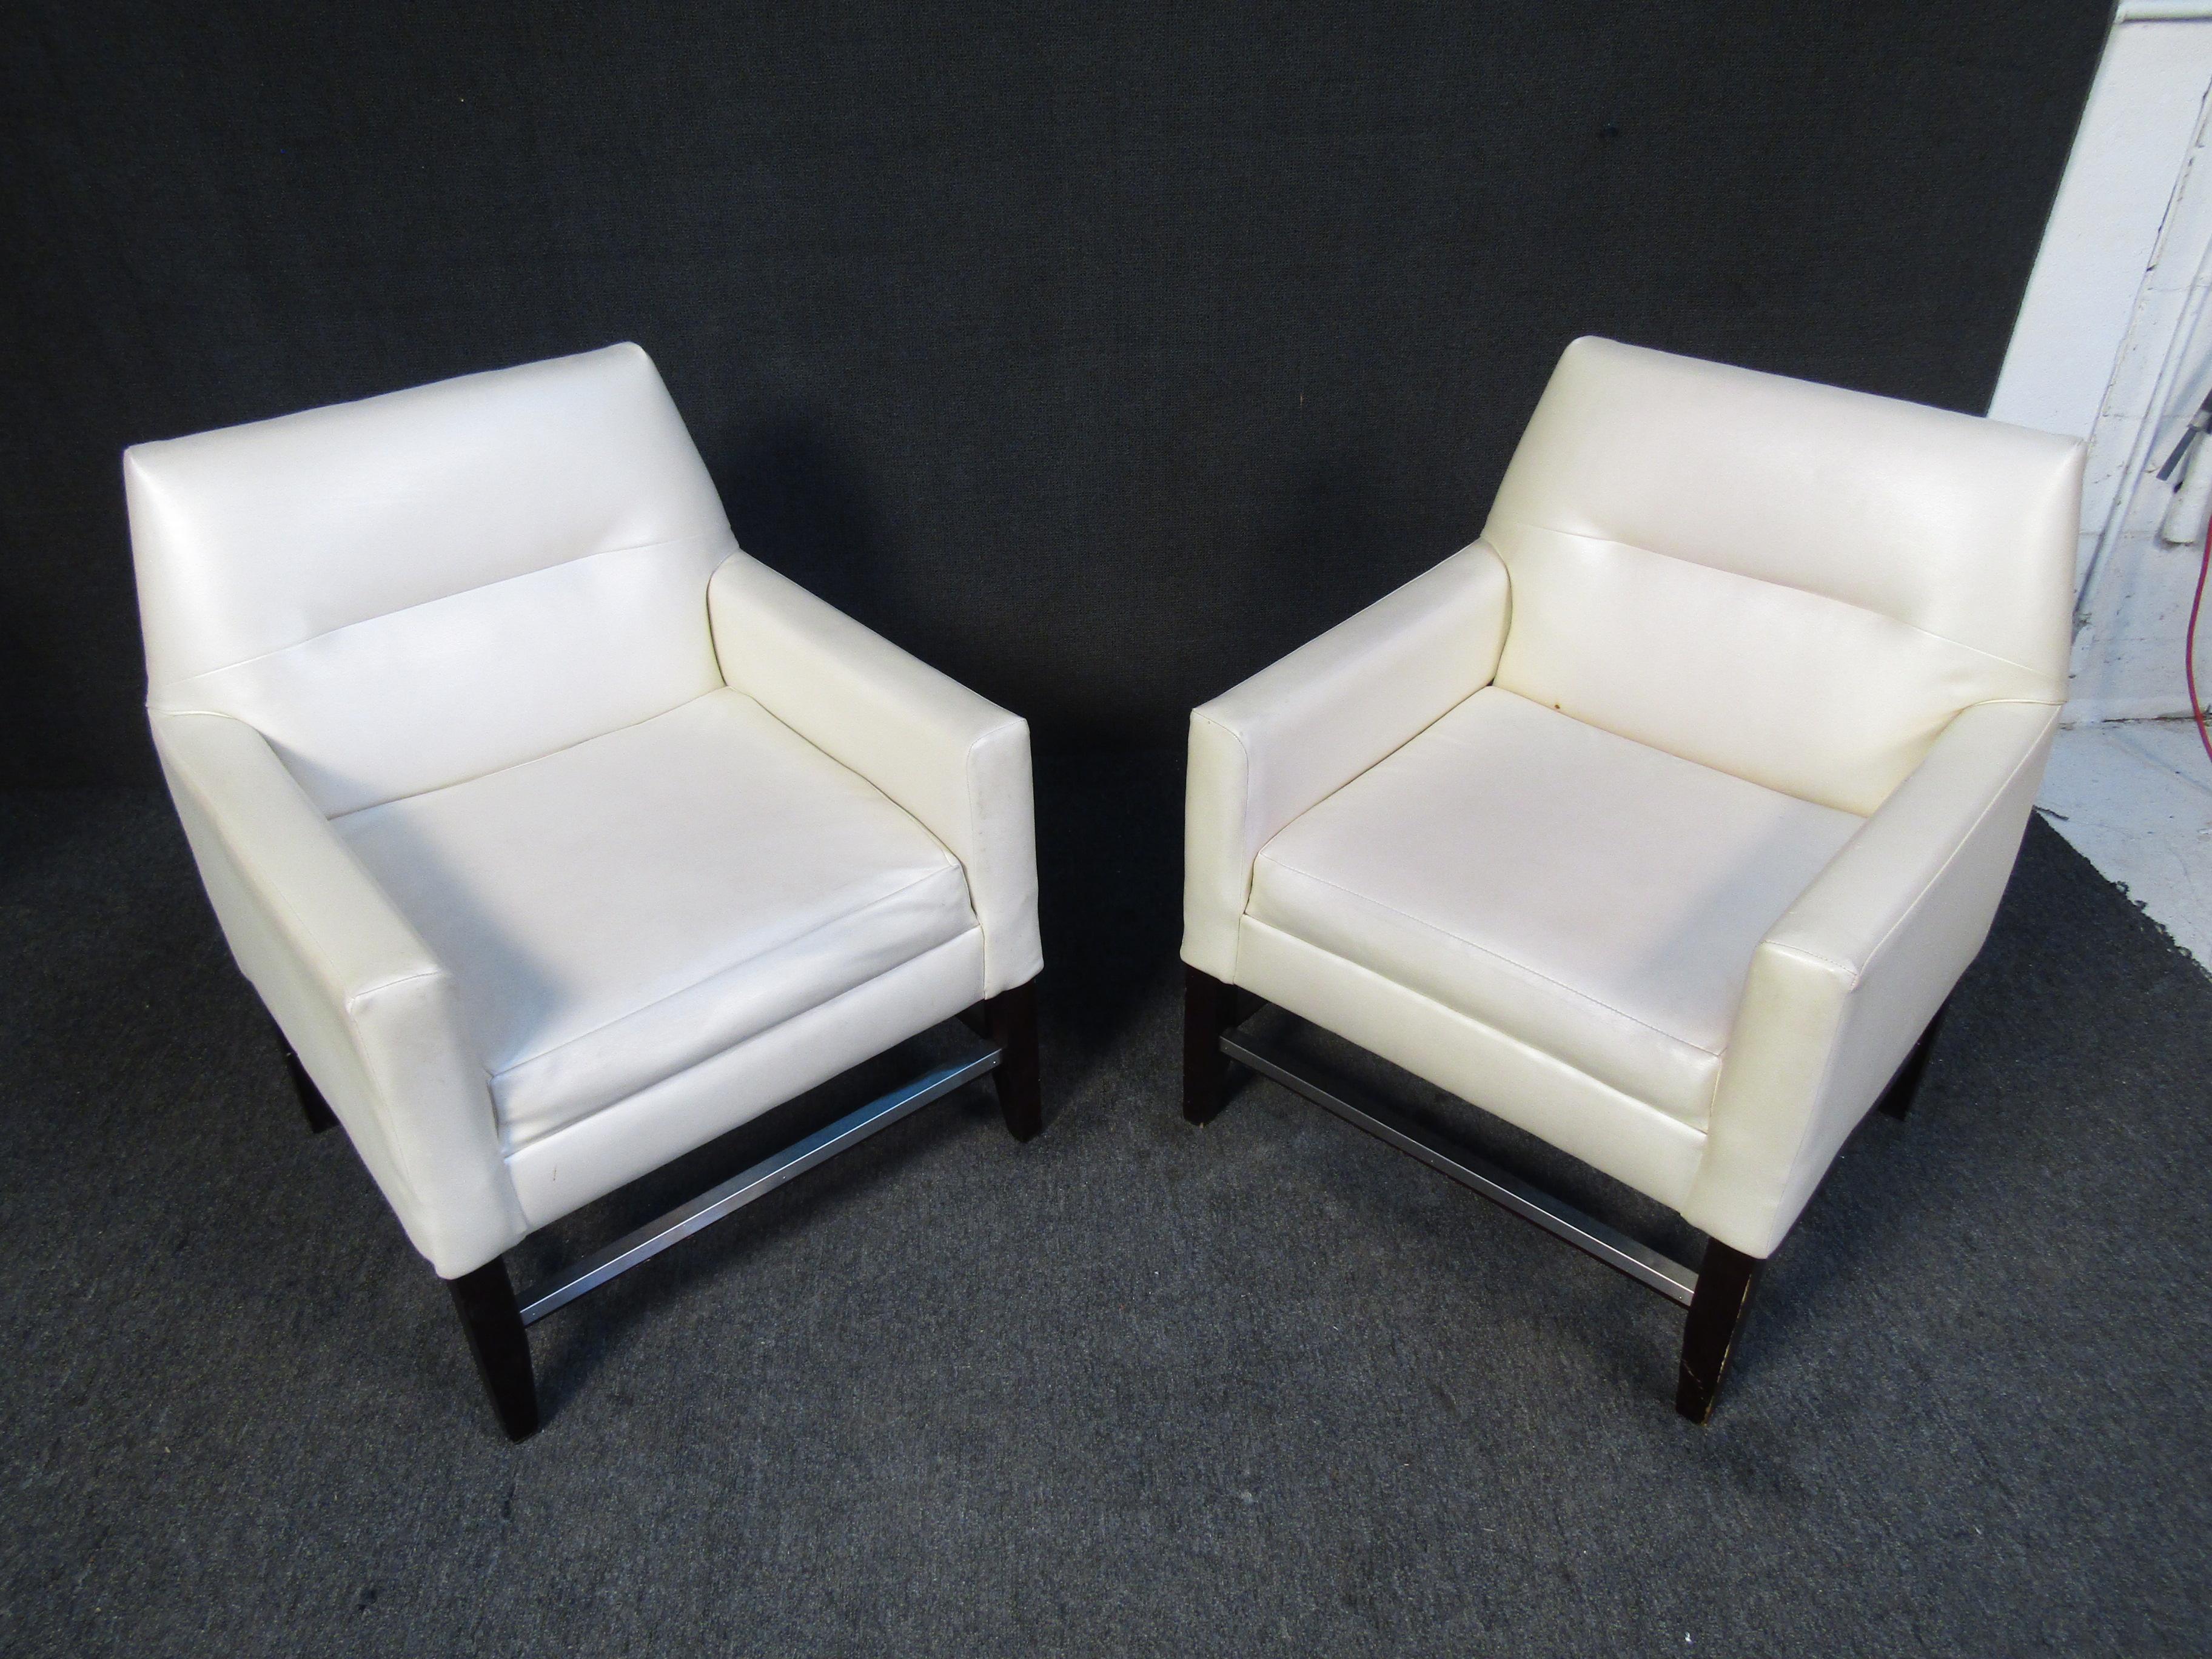 Cette paire de fauteuils club blancs aux lignes pures affiche un style Mid-Century grâce à un design confortable. Le rembourrage en vinyle rend ces chaises faciles à nettoyer et à entretenir. Veuillez confirmer la localisation de l'article auprès du